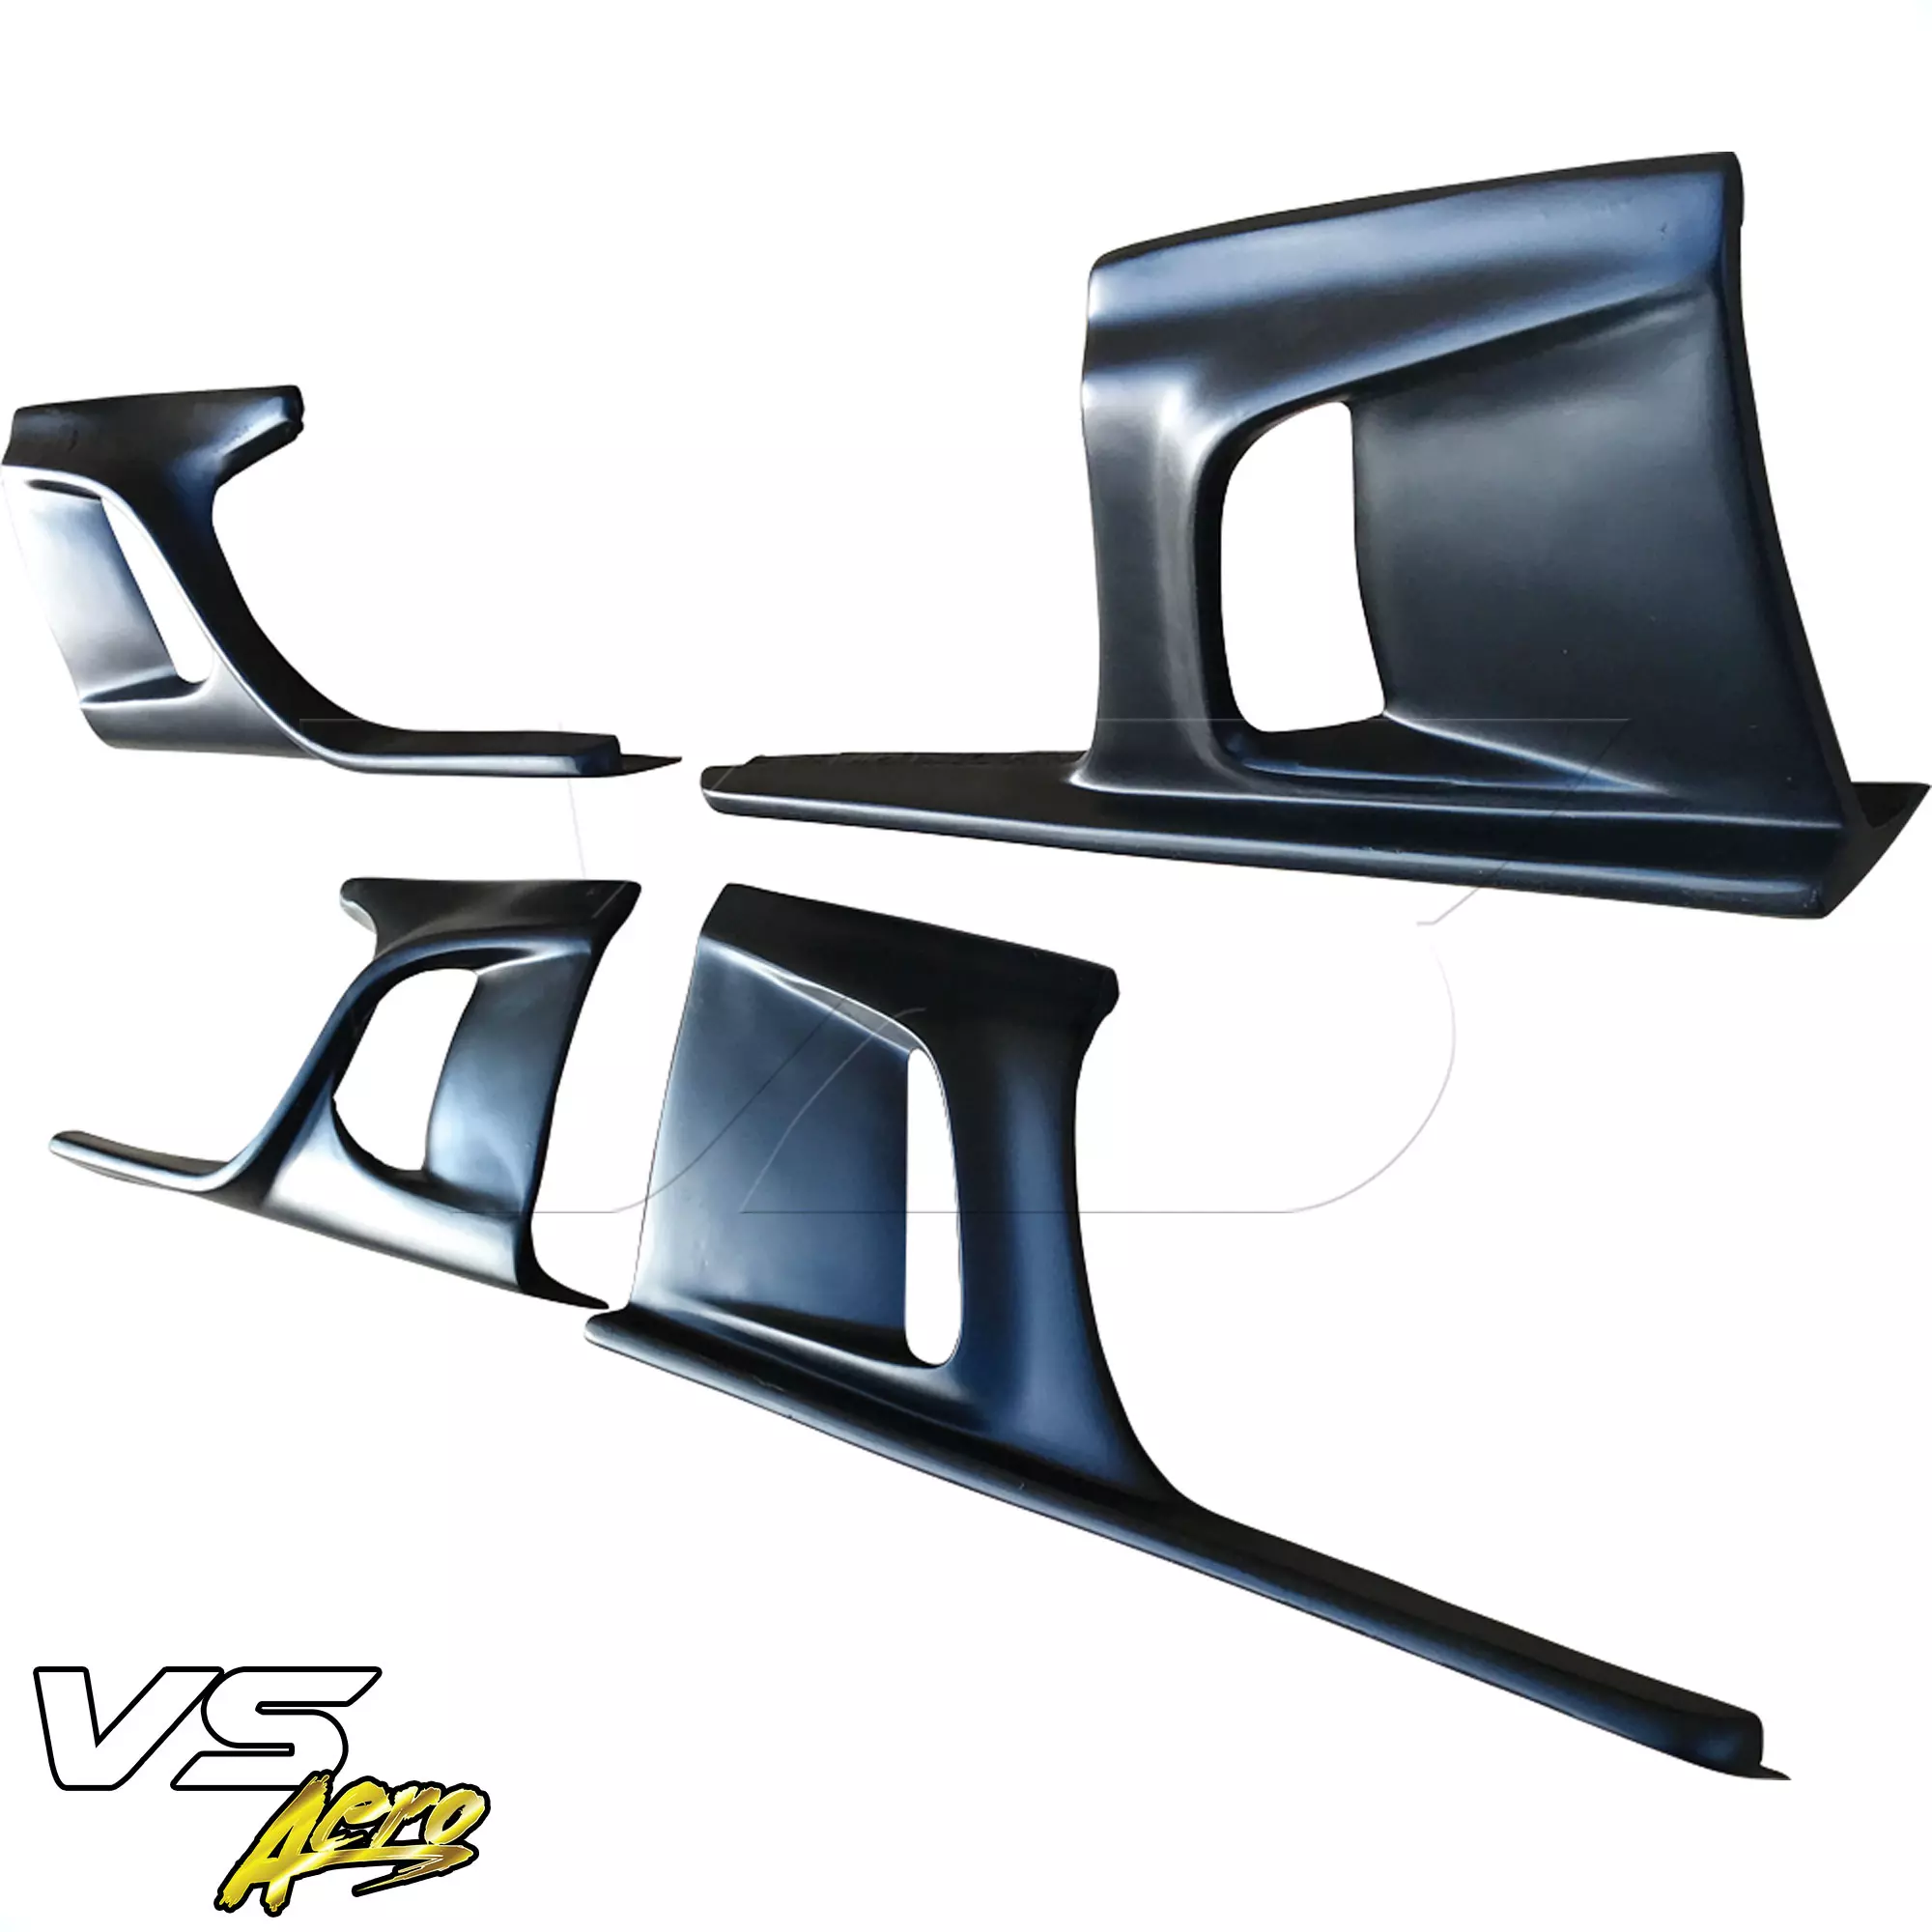 VSaero FRP KTOT Side Skirt Lower Splitters > Ford Mustang 2015-2020 - Image 9